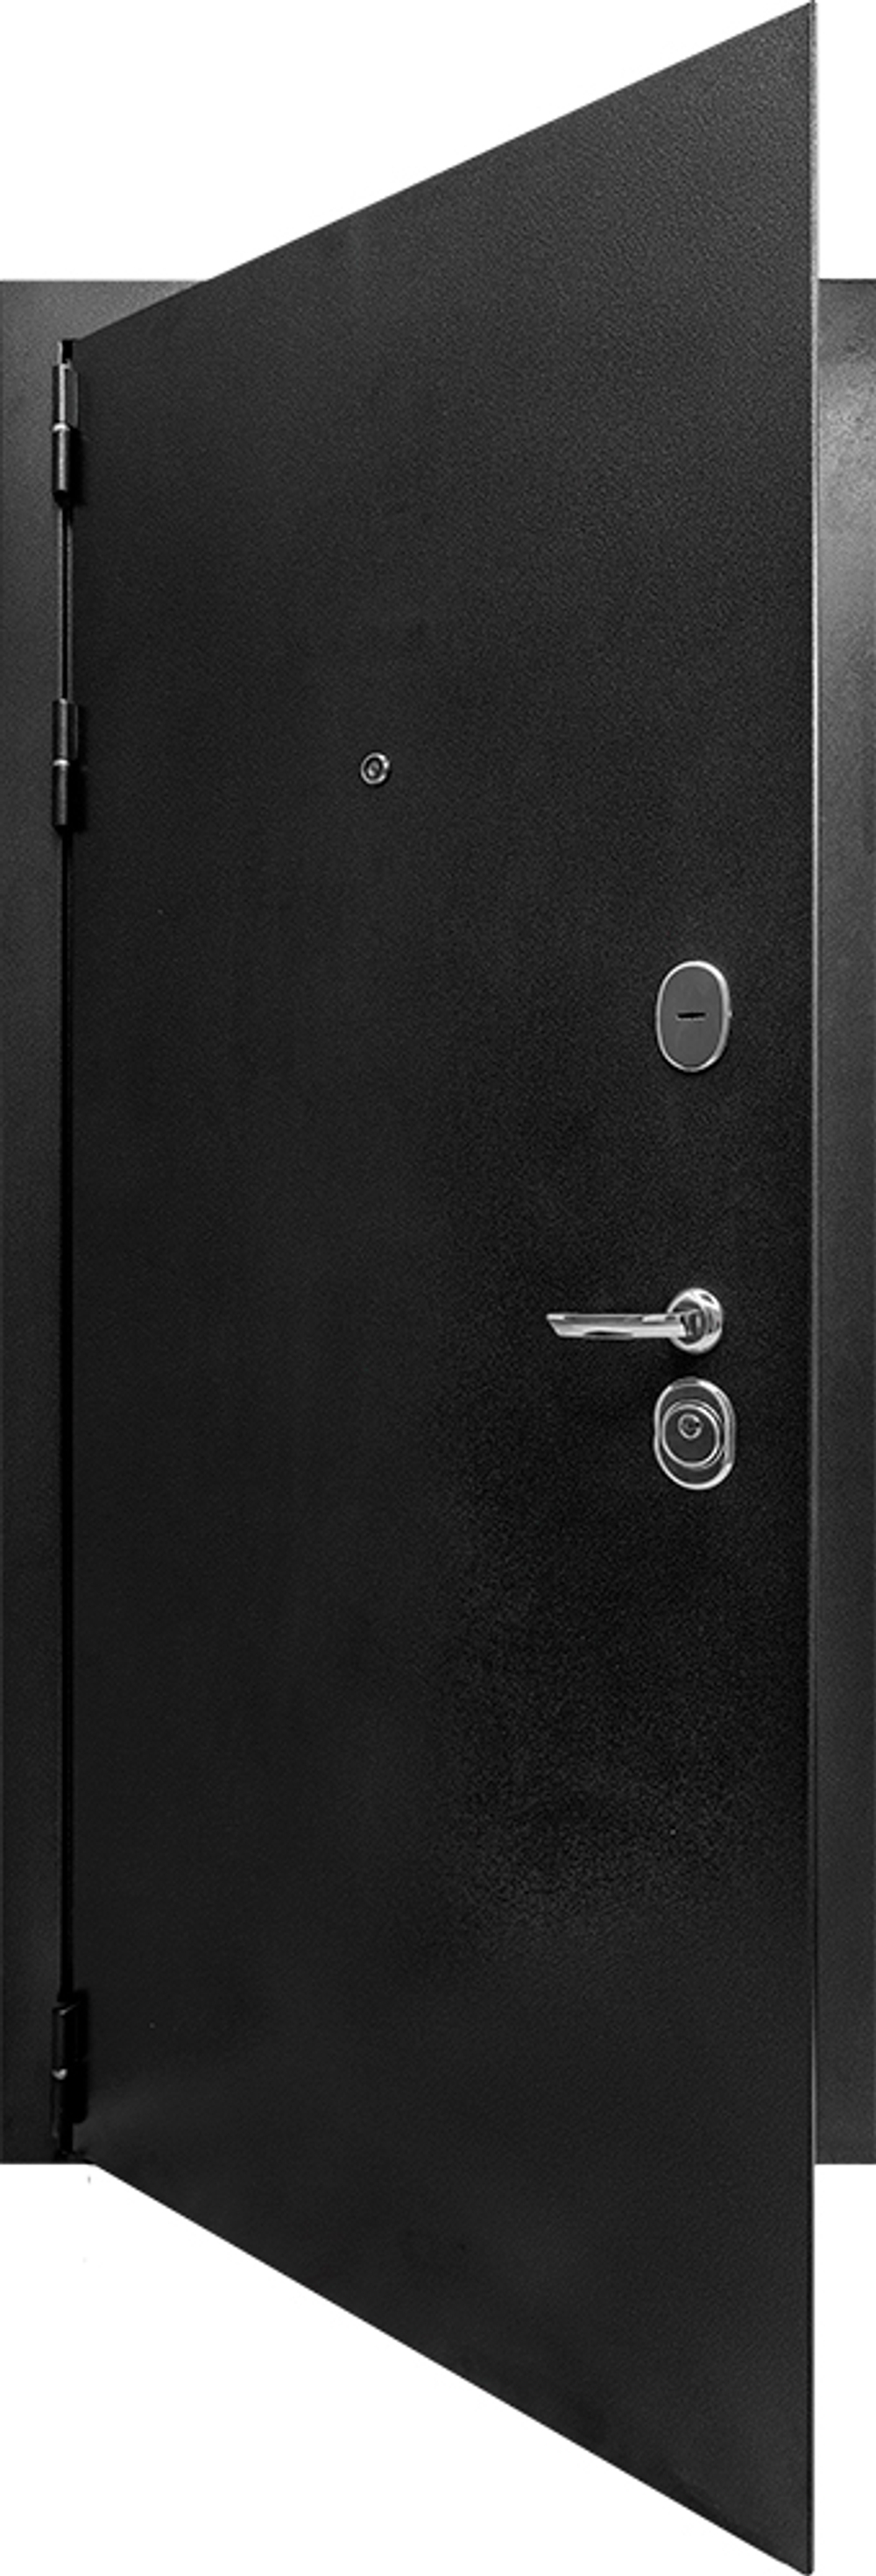 Входная дверь Рубикон Дизайн Антик серебро